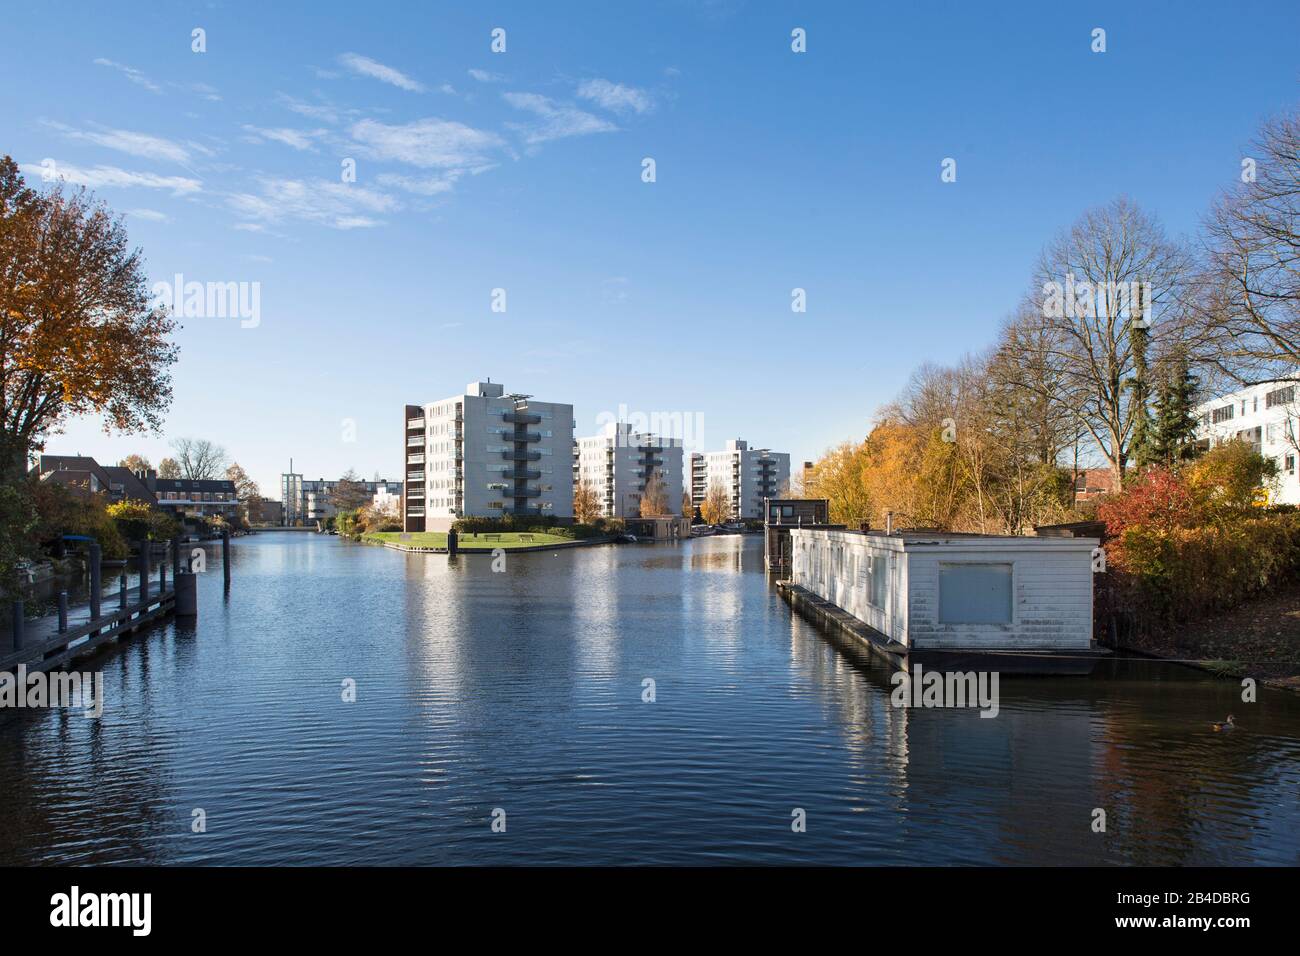 Europa, Paesi Bassi, Groningen: Vista delle case galleggianti e delle case a schiera sul canale Foto Stock